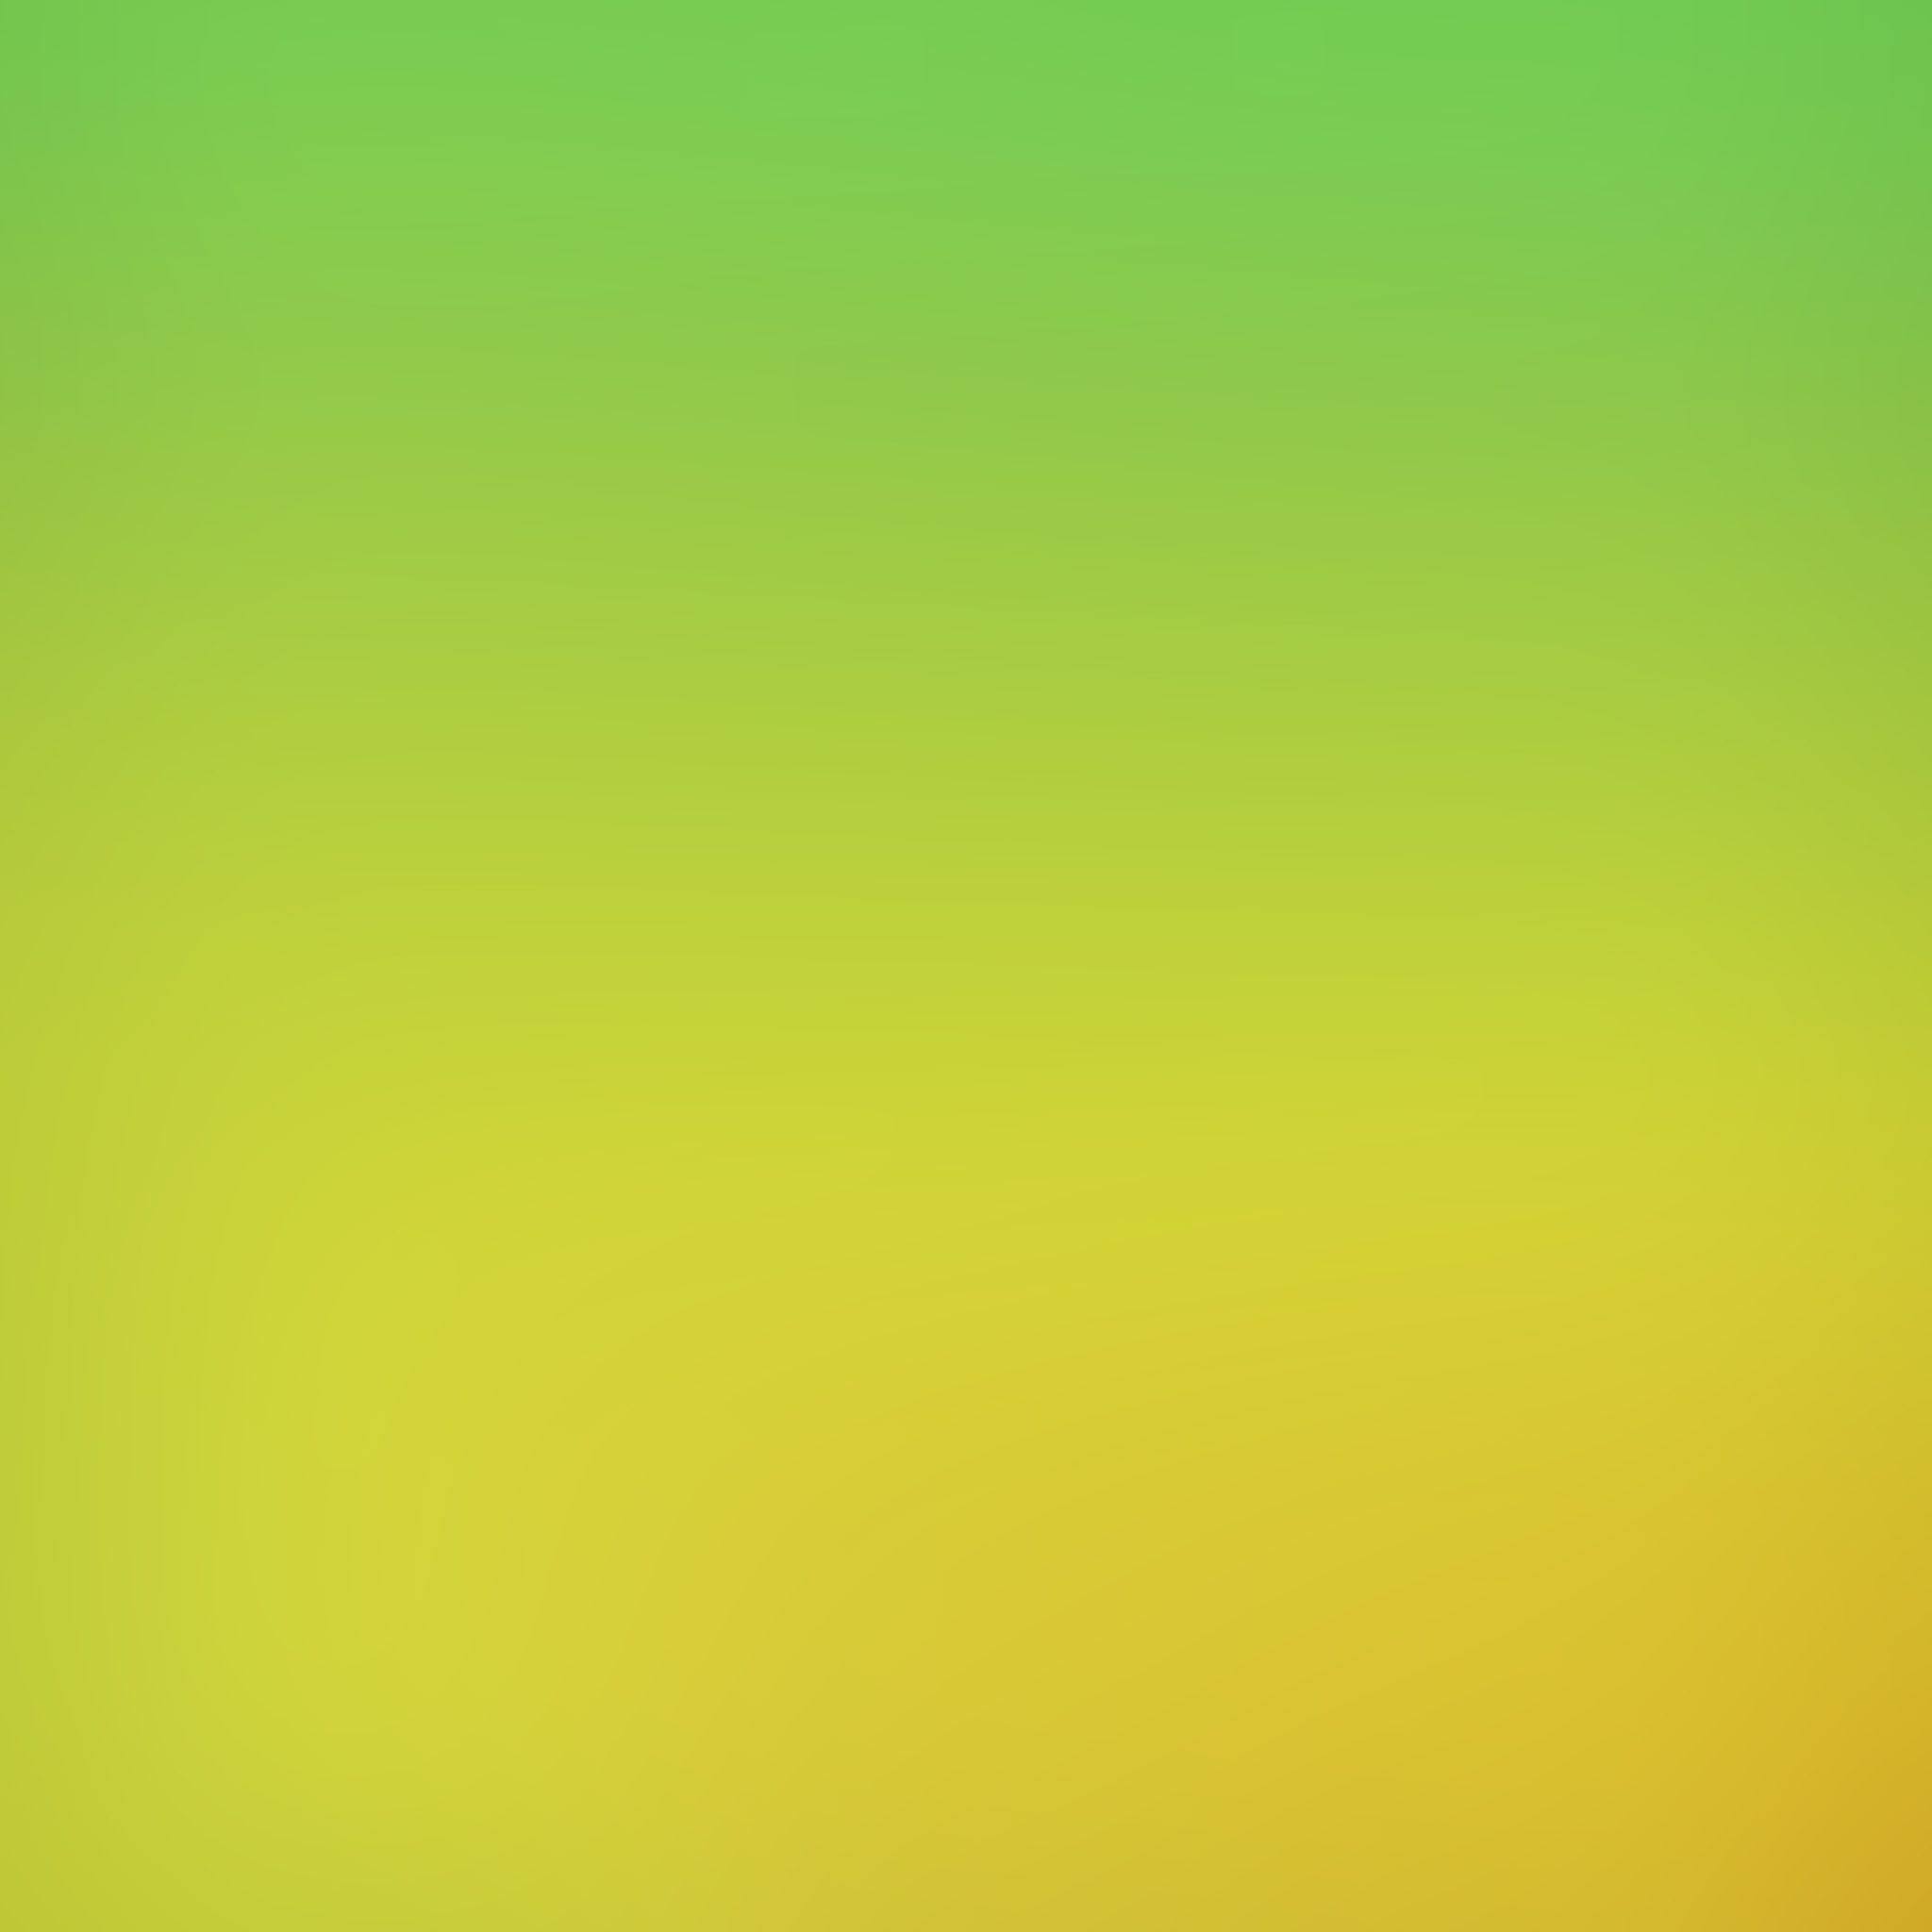 Yellow Green M16 Gradation Blur Wallpaper